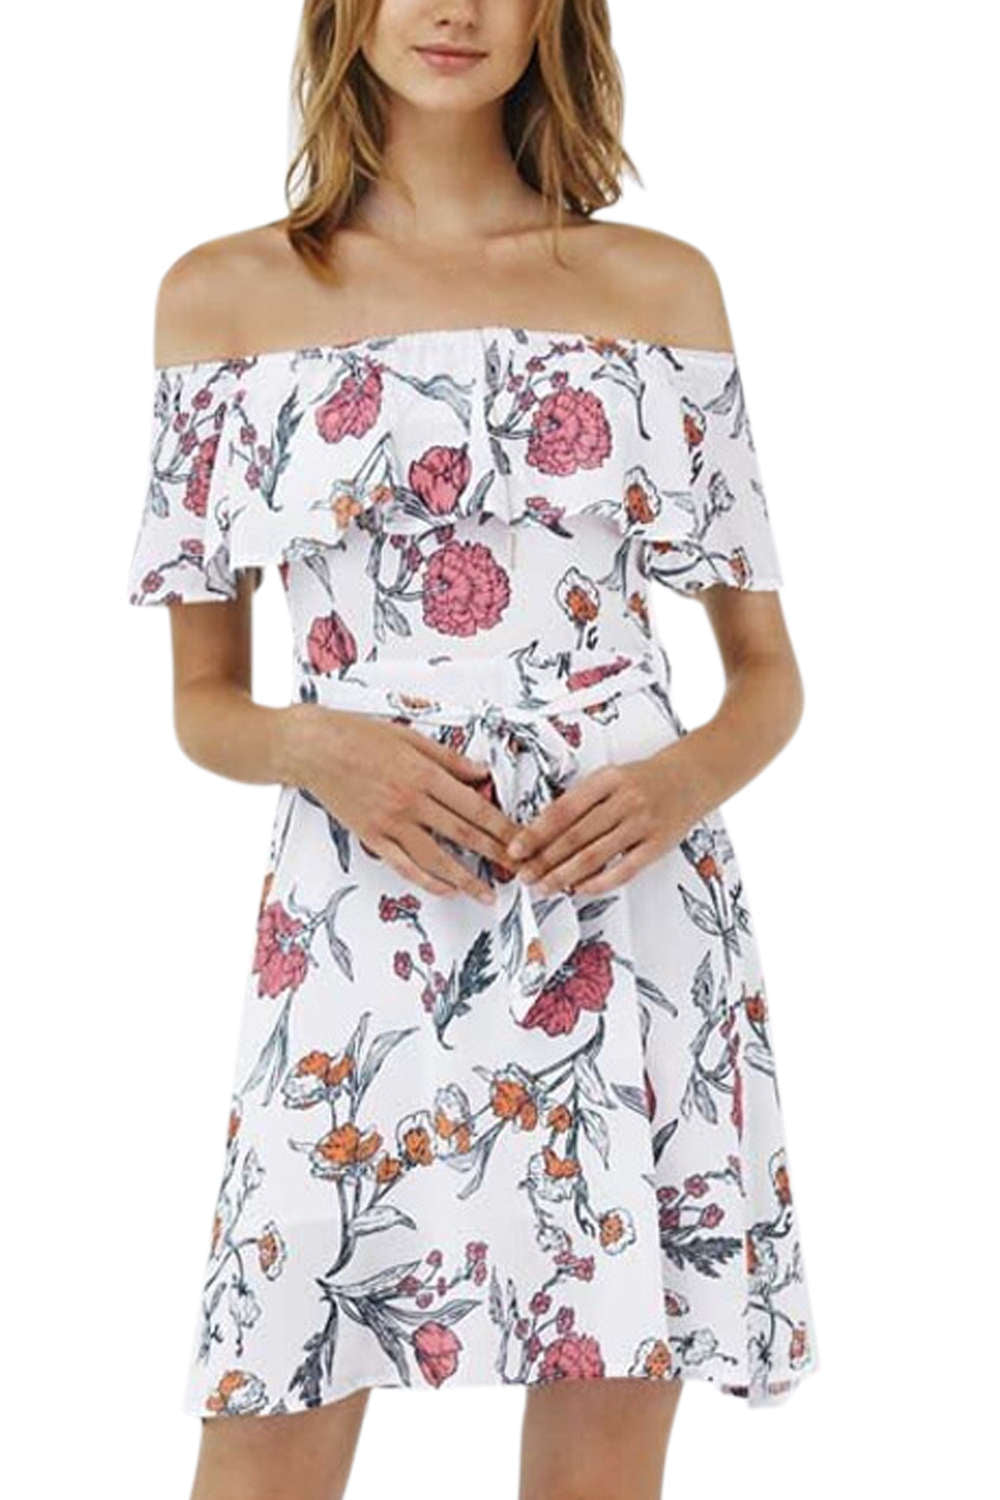 Iyasson Floral Printing Off Shoulder dress